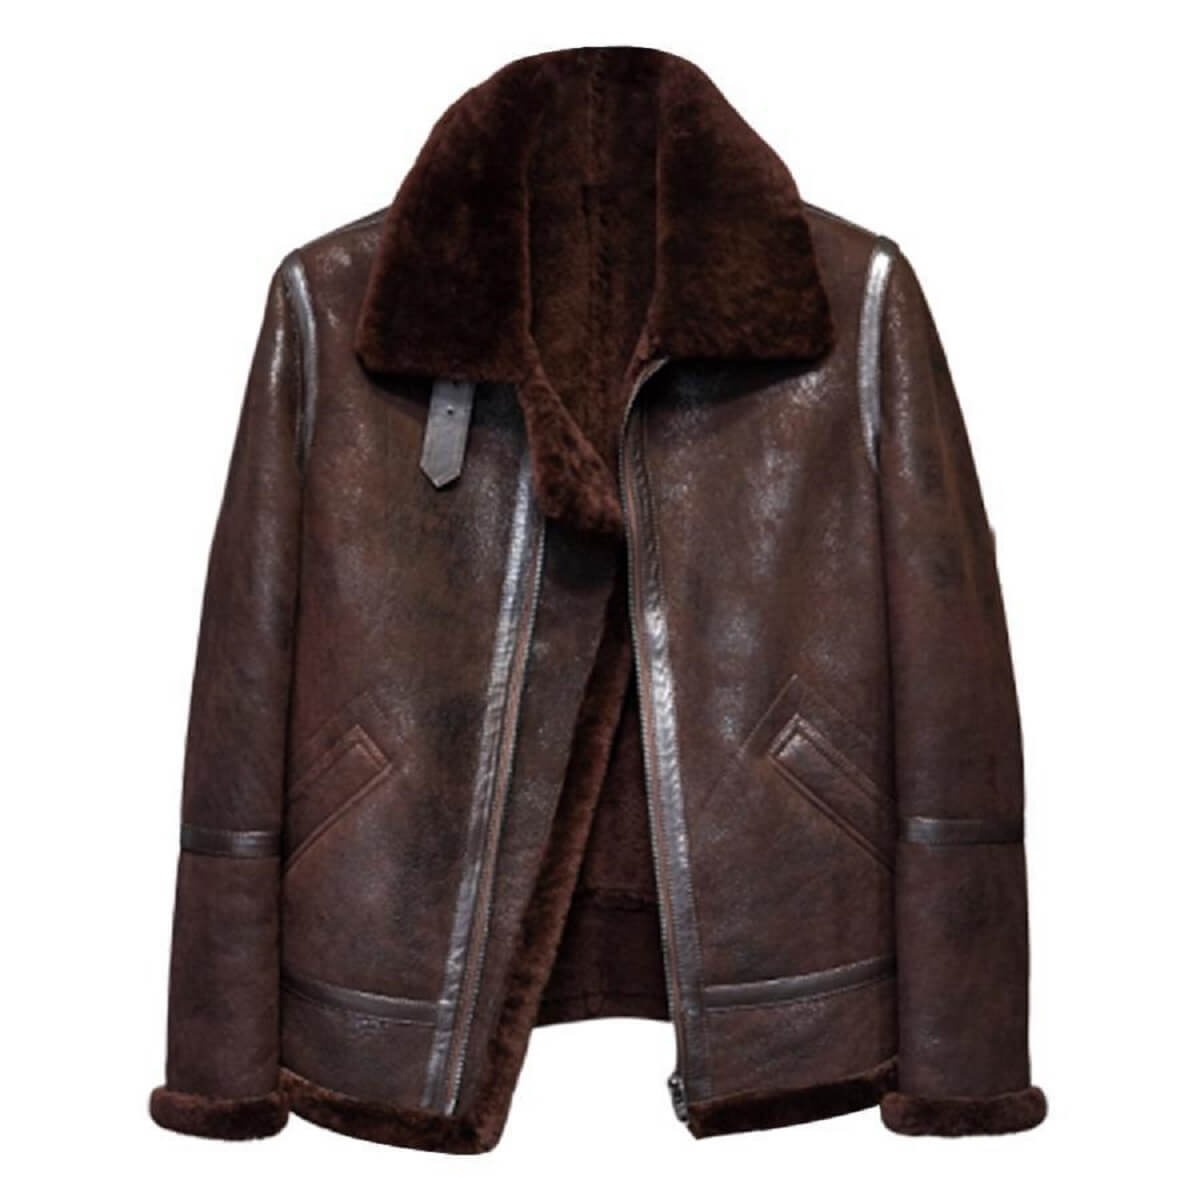 Vintage Brown Leather Jacket For Men's